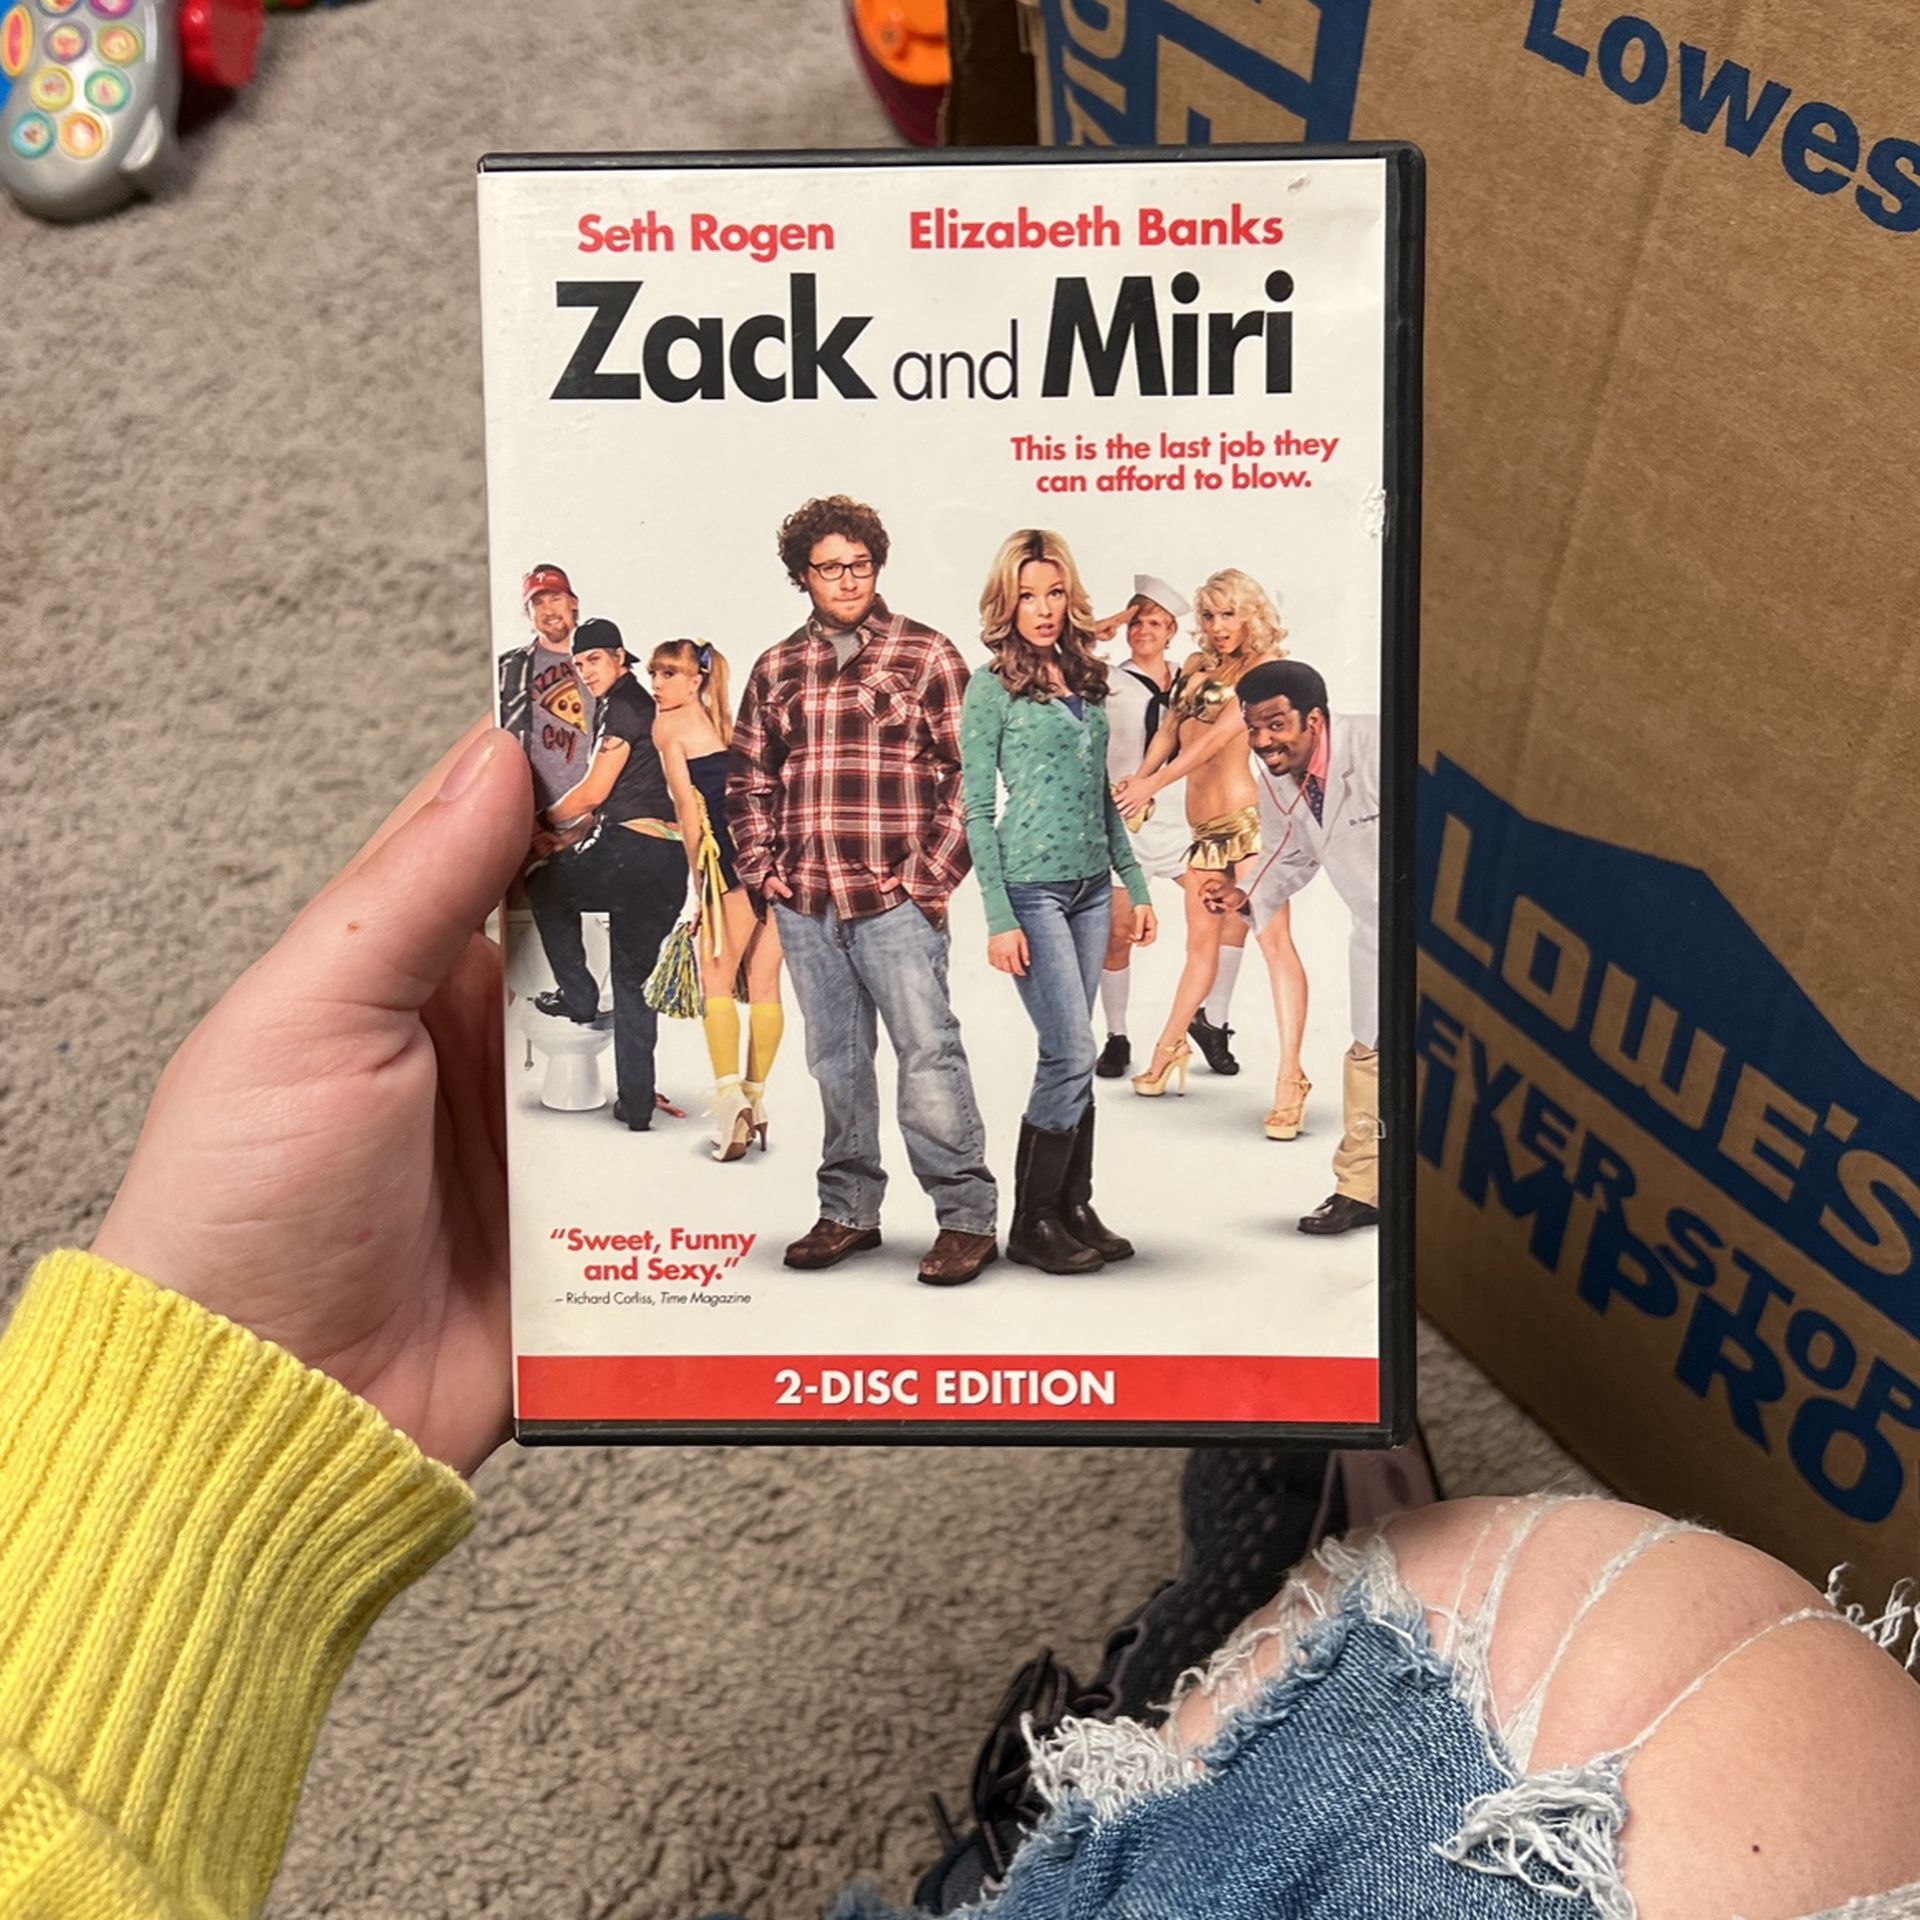 zack and miri dvd